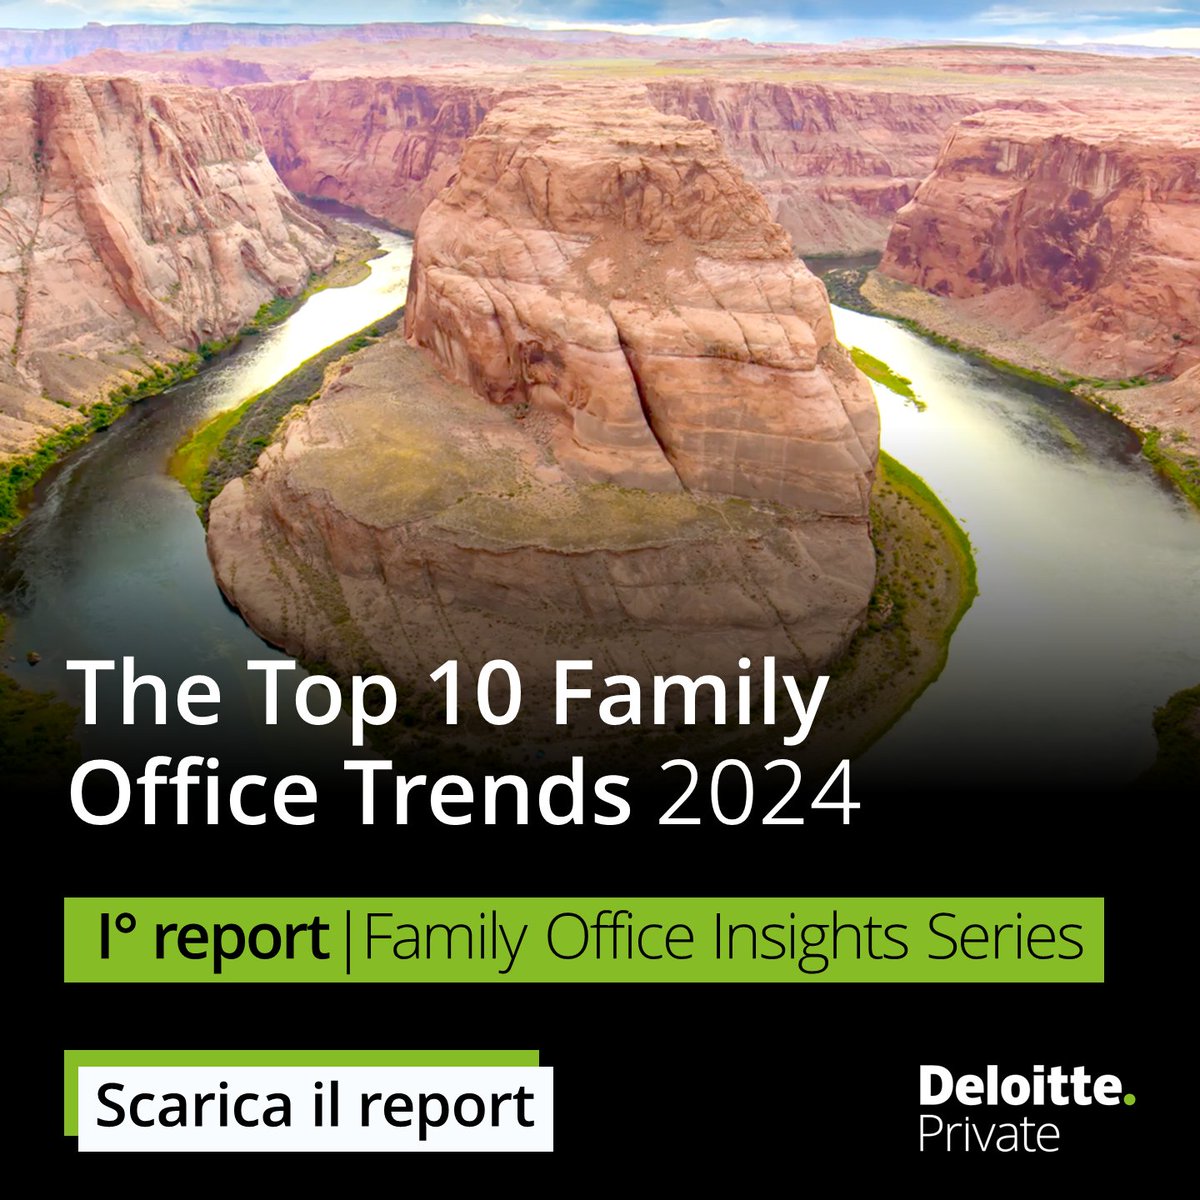 È online il primo report della serie Family Office Insights di Deloitte Private. L’analisi approfondisce i primi 10 trend dei family office quest’anno: deloi.tt/4bvqcez #FamilyOffice #FamilyOfficeInsights #DeloitteItalia #DeloittePrivate